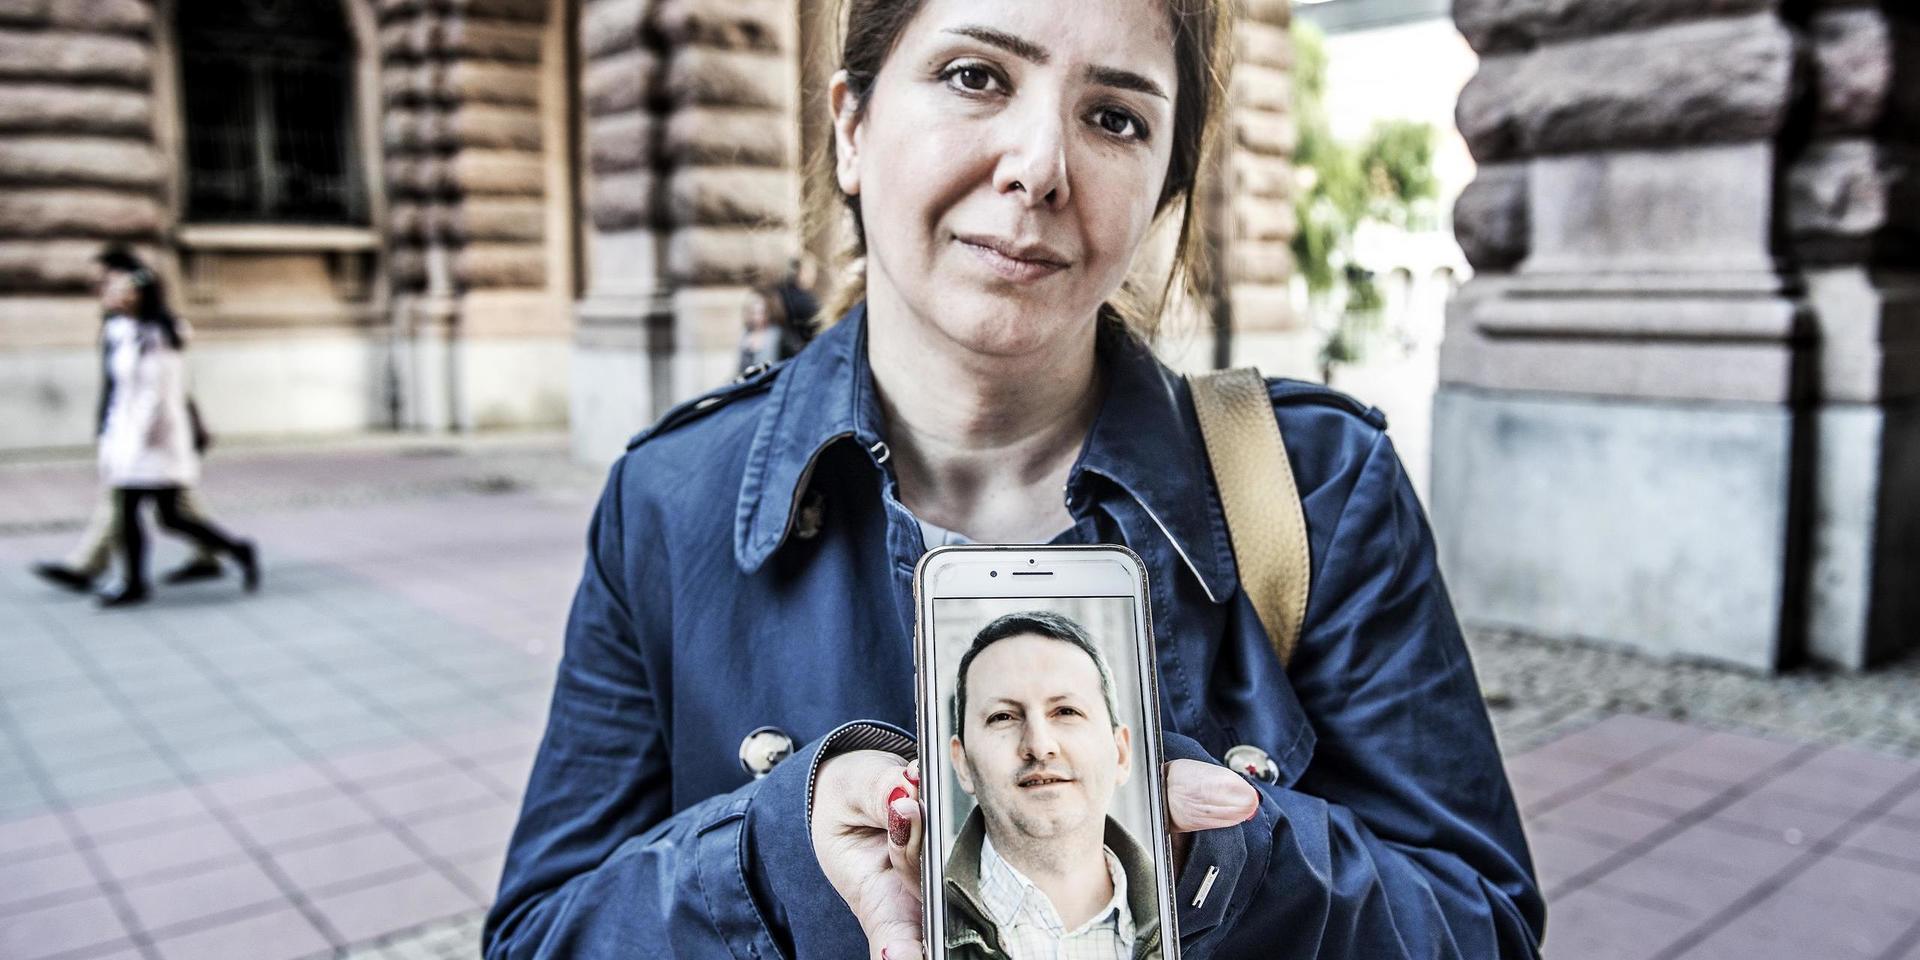 Vida Djalali, fru till den fängslade Ahmadreza Djalali, håller upp en bild på sin man.